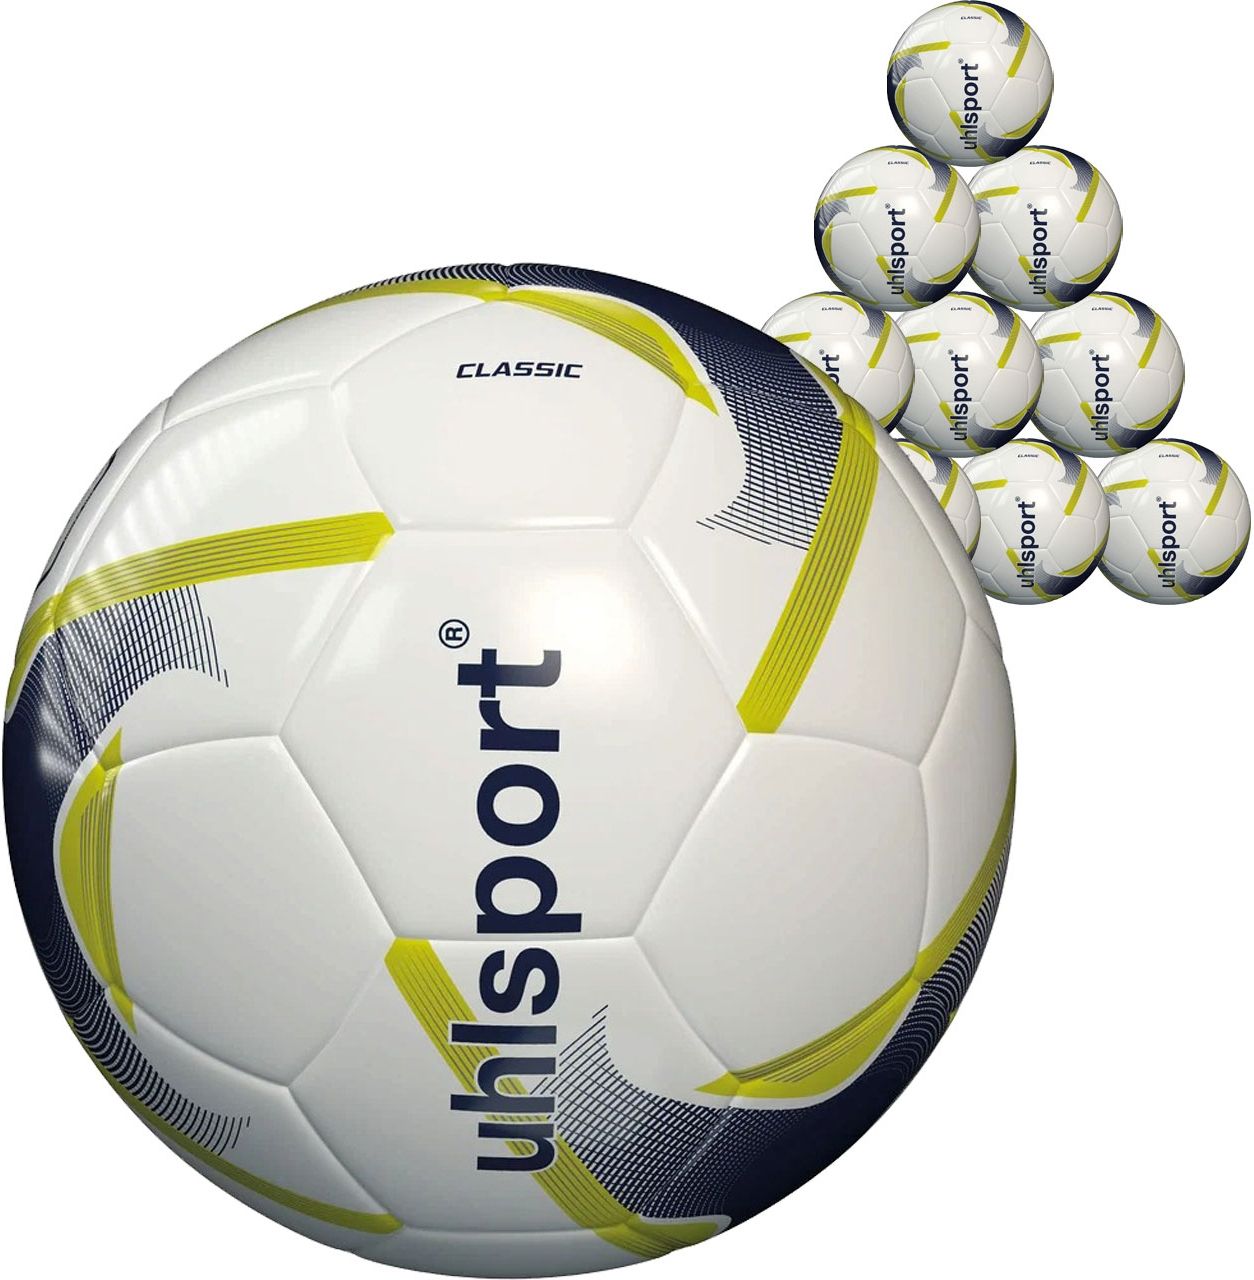 Ballons de foot de toutes les marques et tailles sur Unisport